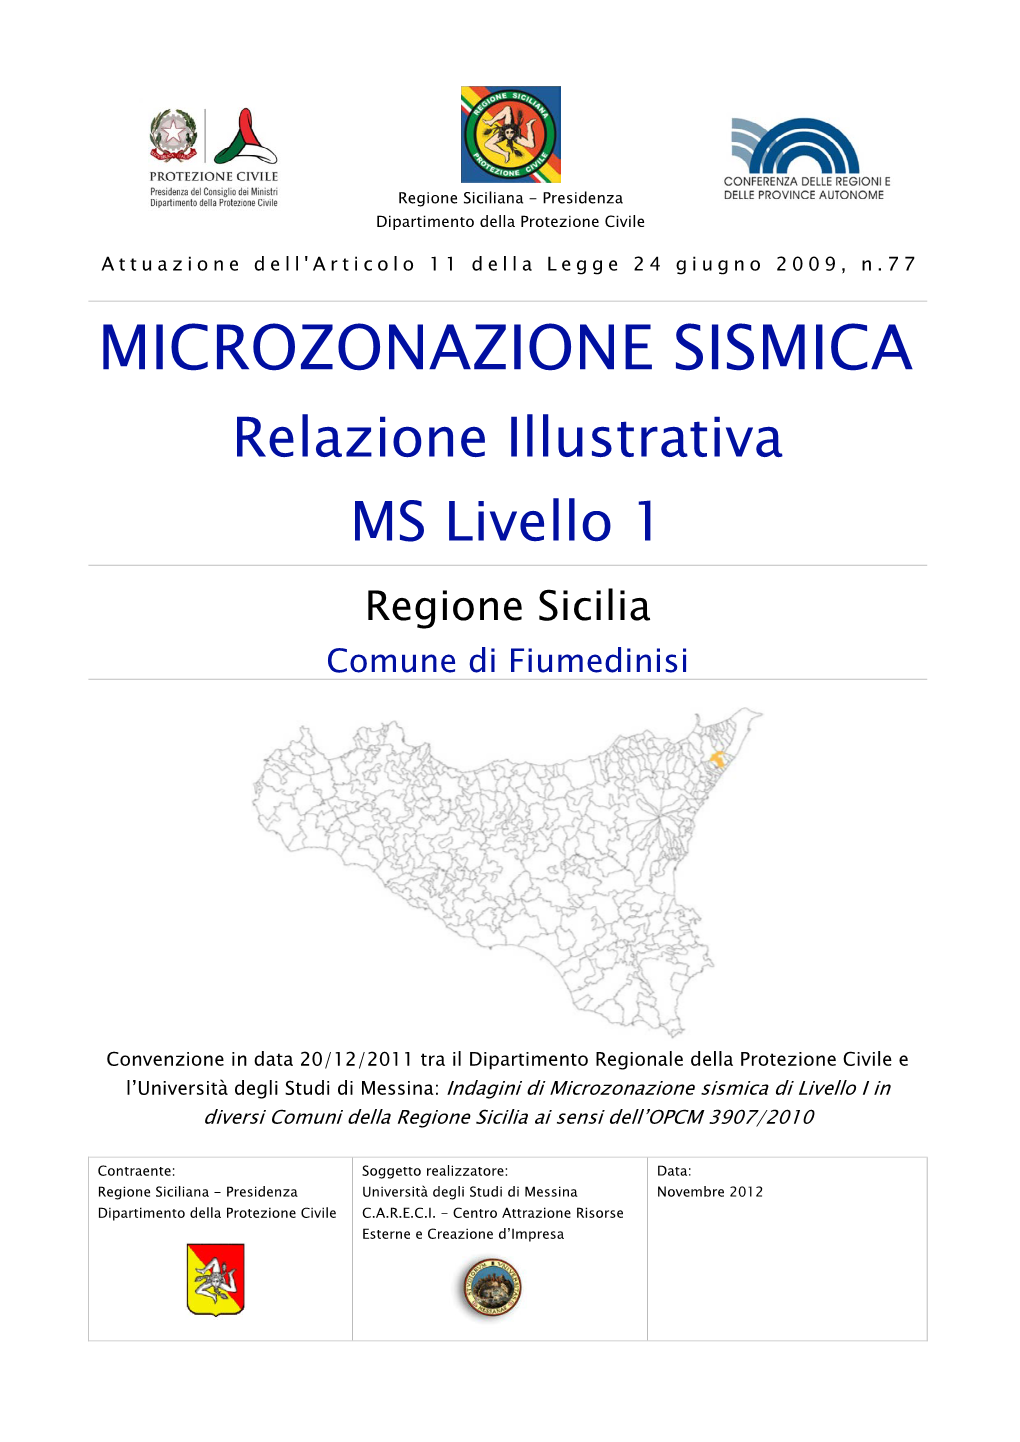 MICROZONAZIONE SISMICA Relazione Illustrativa MS Livello 1 Regione Sicilia Comune Di Fiumedinisi